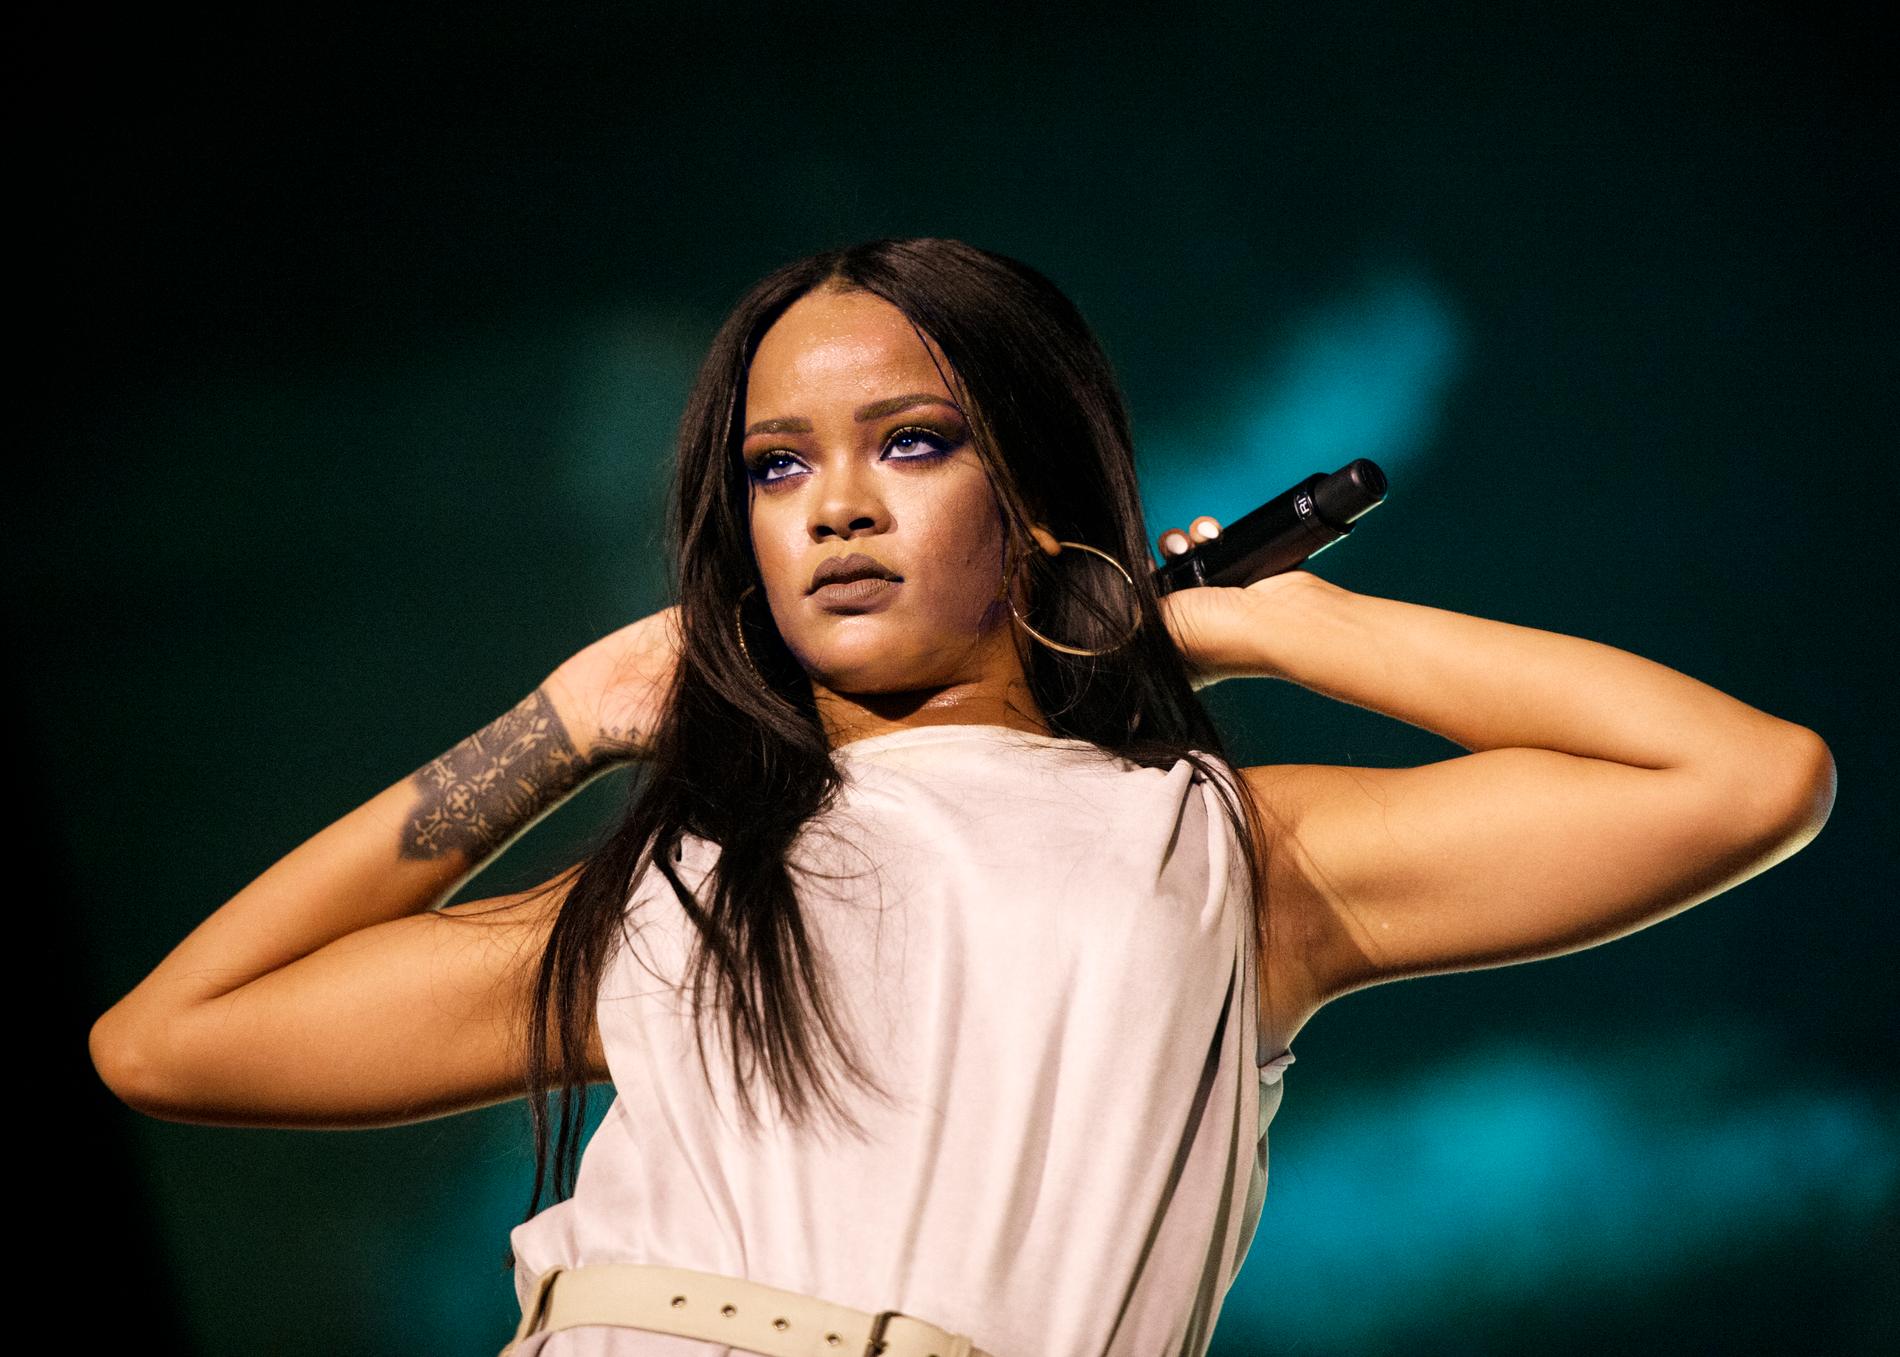 Inte första gången vi skriver i den här sortens artikel att Rihanna har ett nytt album på gång men i fjol sade hon att hon ”verkligen ville” att plattan slutligen skulle släppas så vi väljer att tro att det är i år det sker.